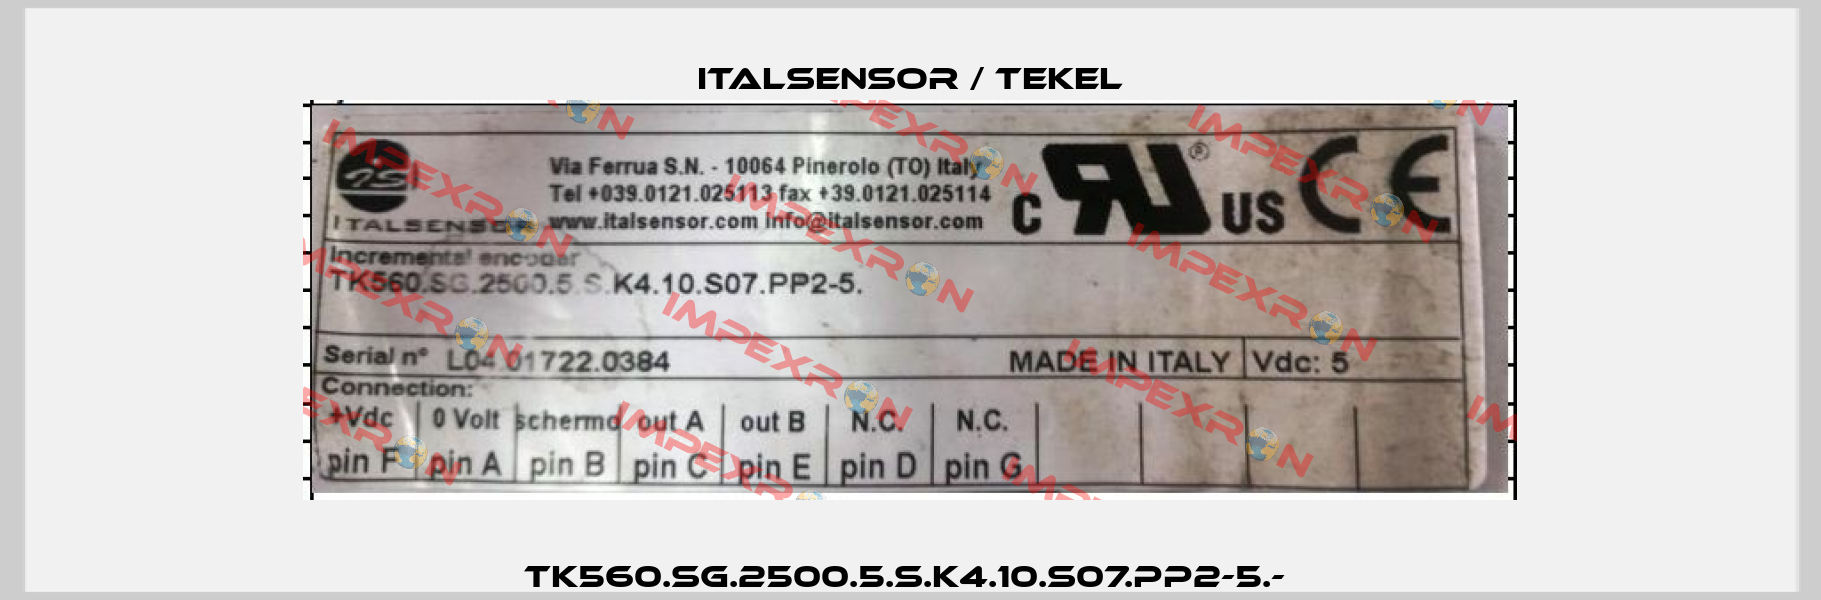 TK560.SG.2500.5.S.K4.10.S07.PP2-5.-  Italsensor / Tekel